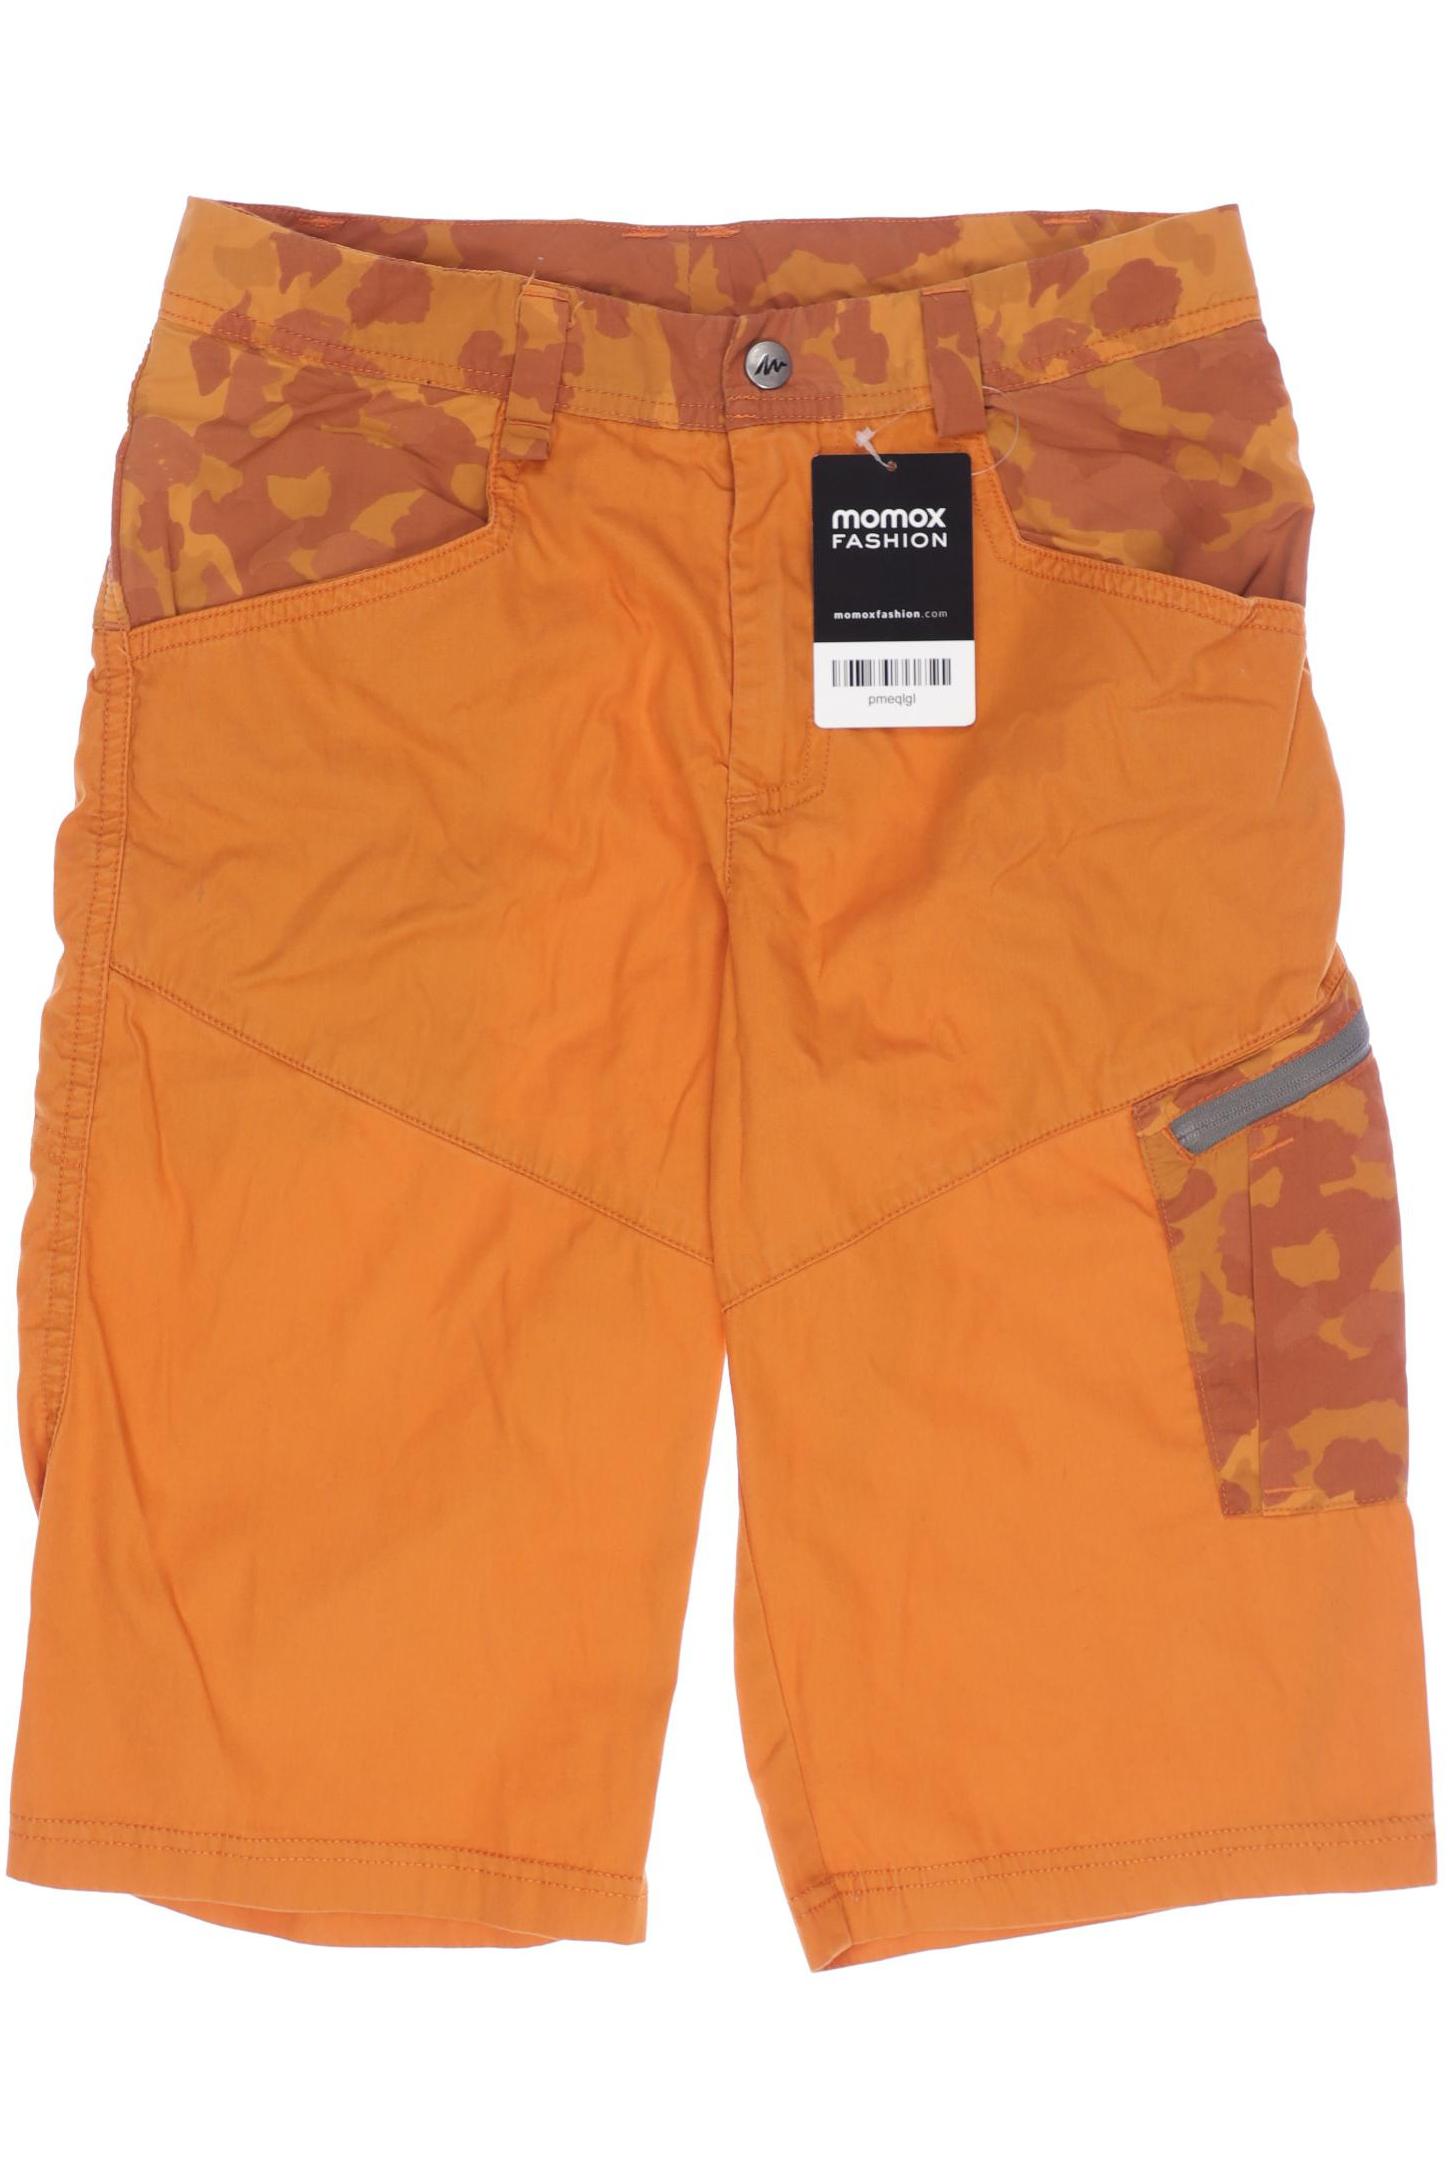 quechua Herren Shorts, orange, Gr. 128 von quechua